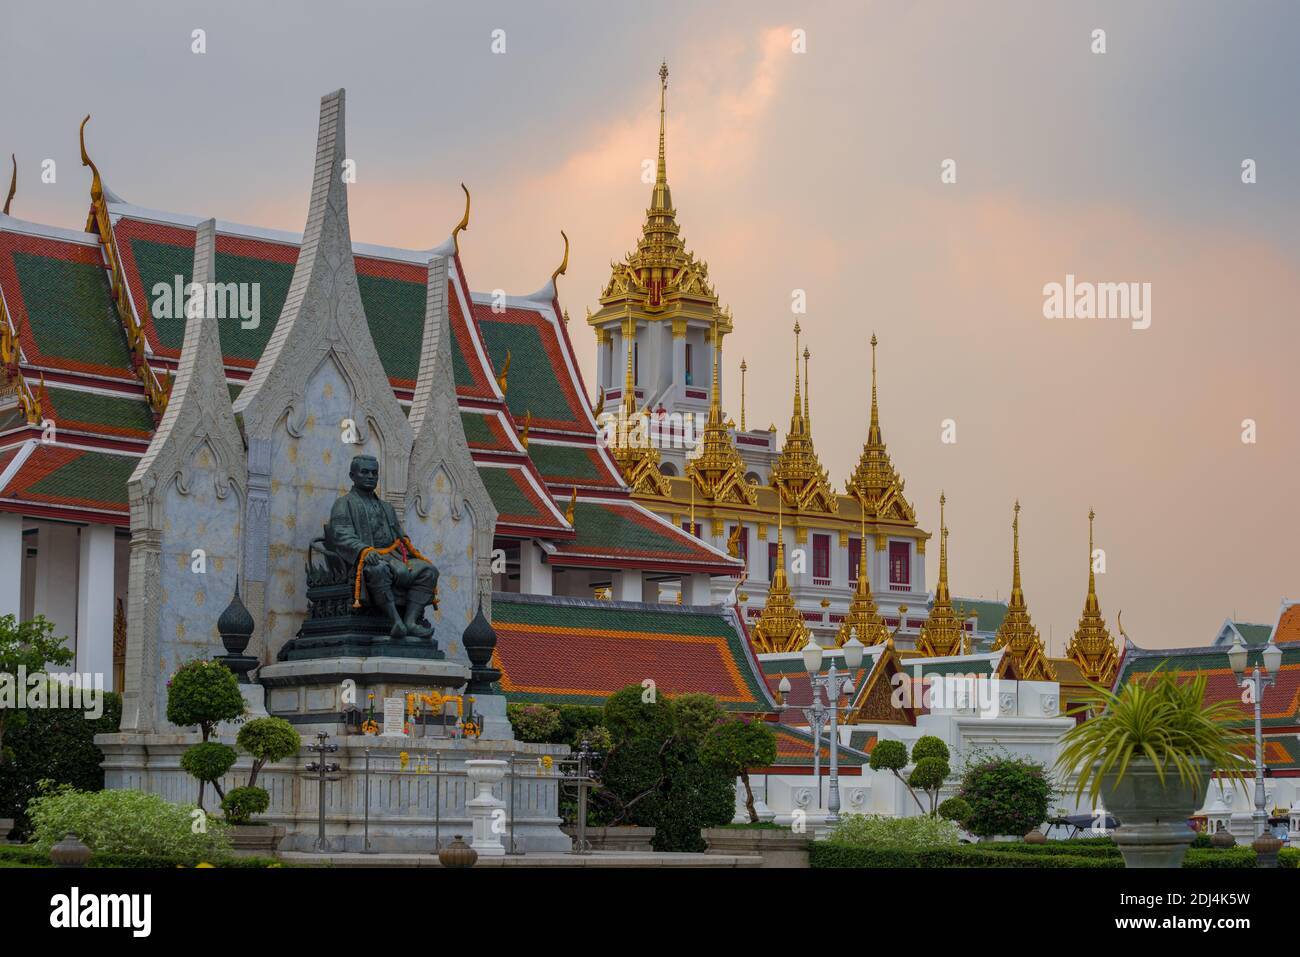 BANGKOK, THAILAND - 28. DEZEMBER 2018: Denkmal des thailändischen Königs Rama III. Vor dem Hintergrund des buddhistischen Tempels Wat Ratchanatdaram Worawihan im Th Stockfoto